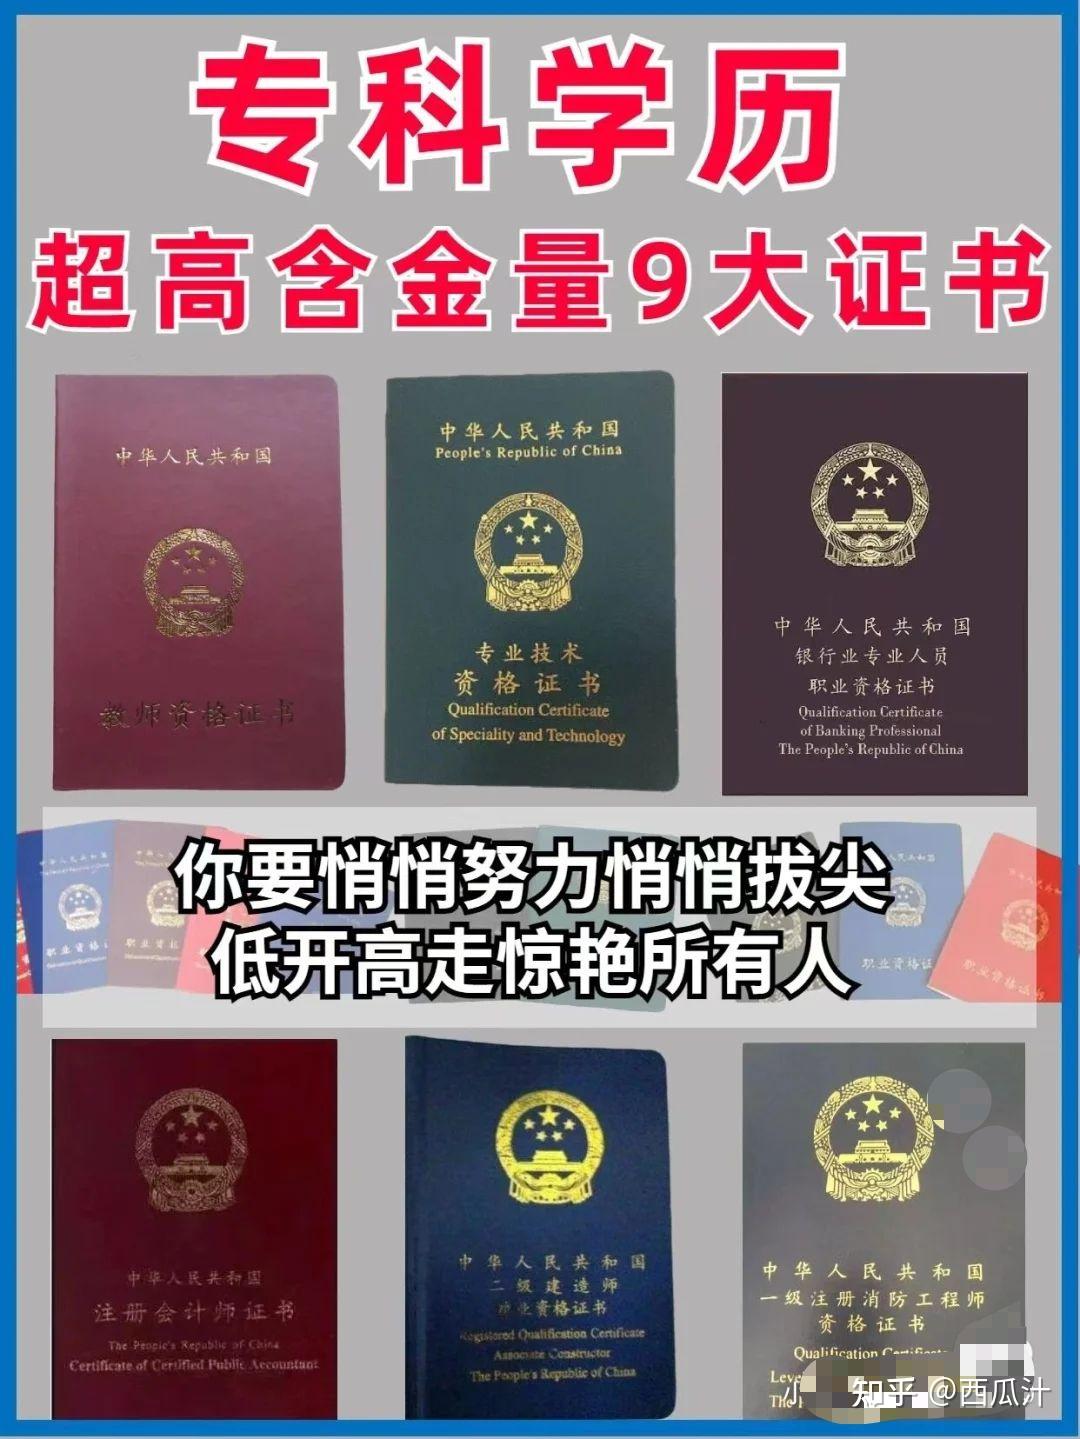 恭贺本期学员成功获取KET证书-搜狐大视野-搜狐新闻